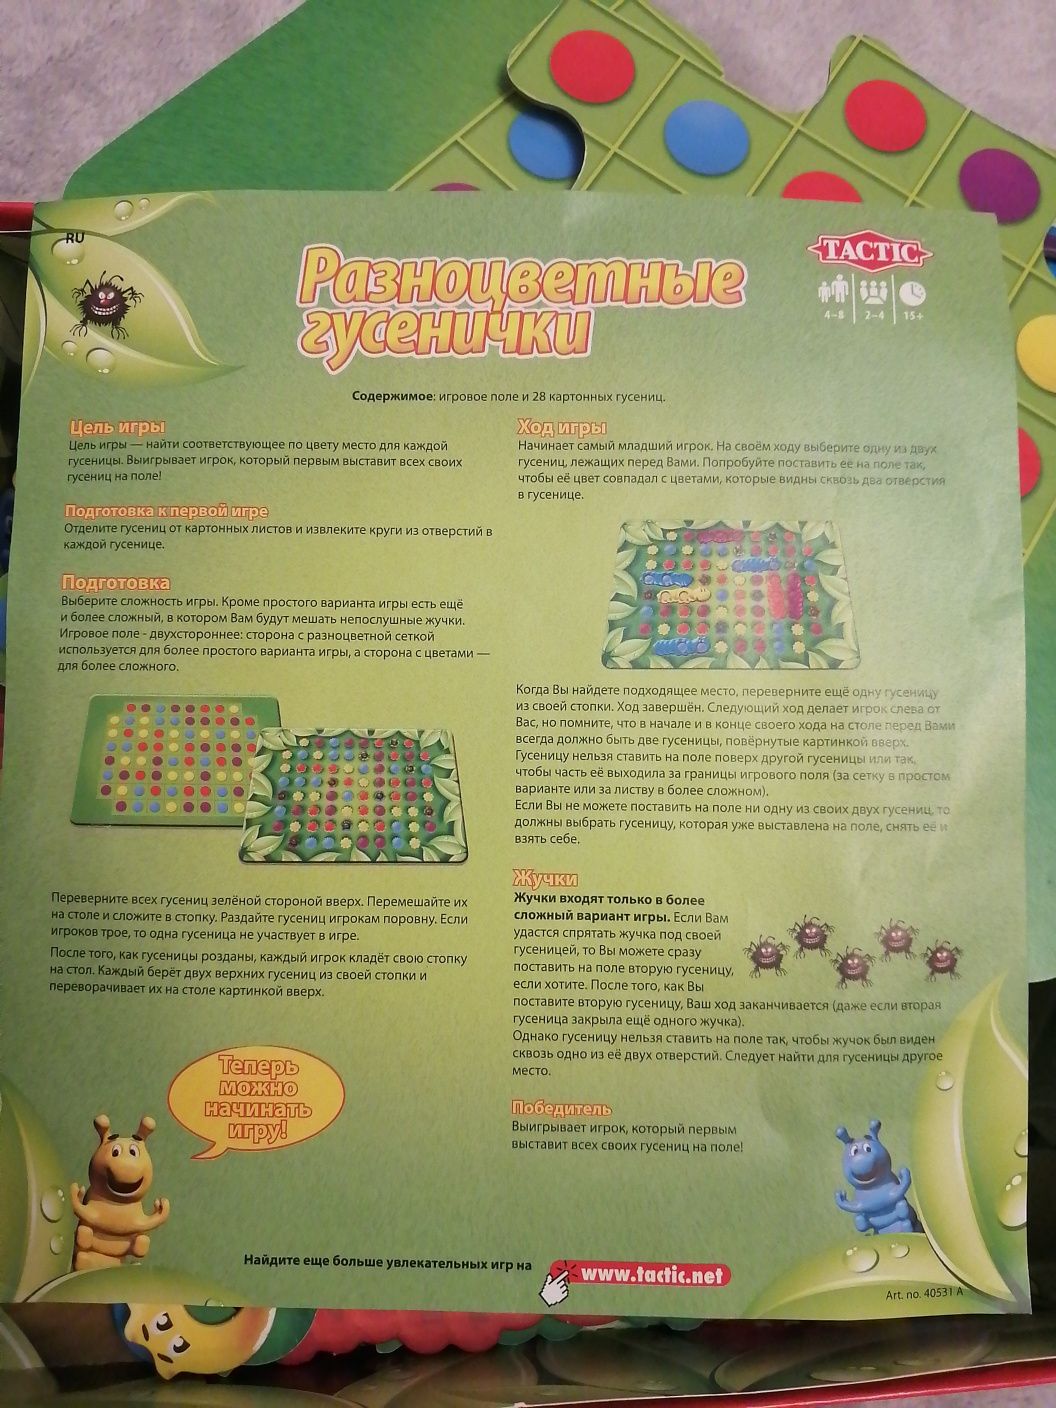 Увлекательная игра "Разноцветные гусенички"